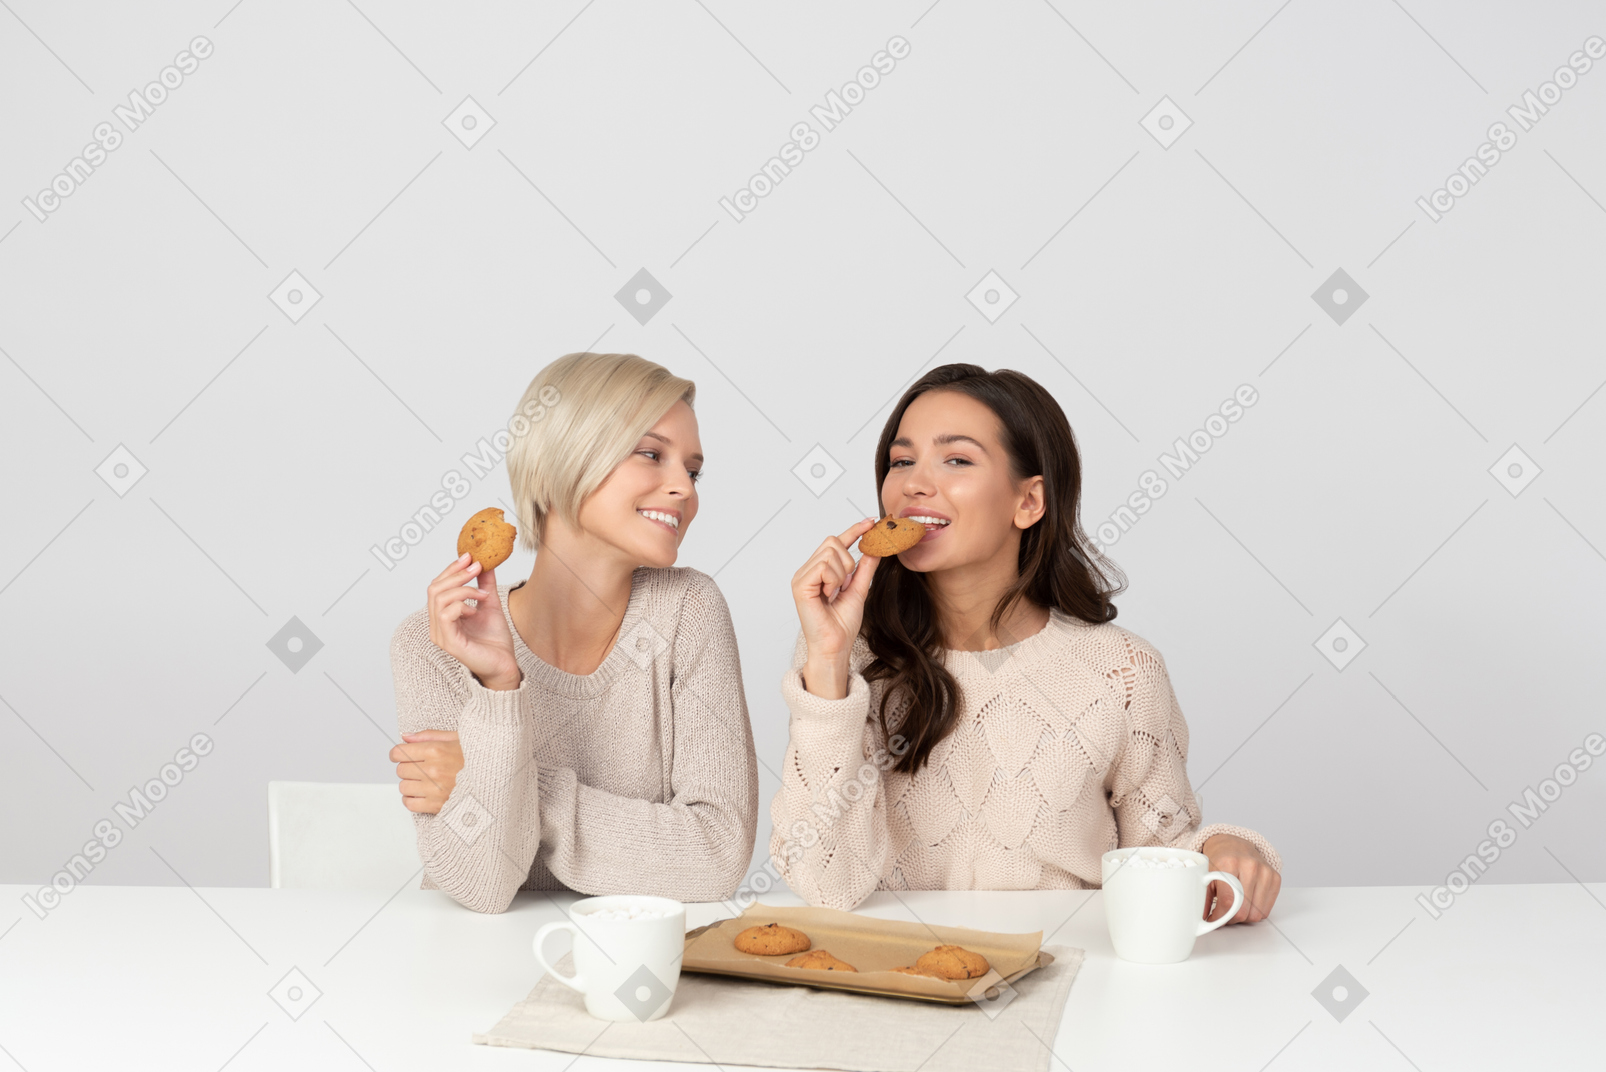 Mujeres jóvenes comiendo galletas y sonriendo